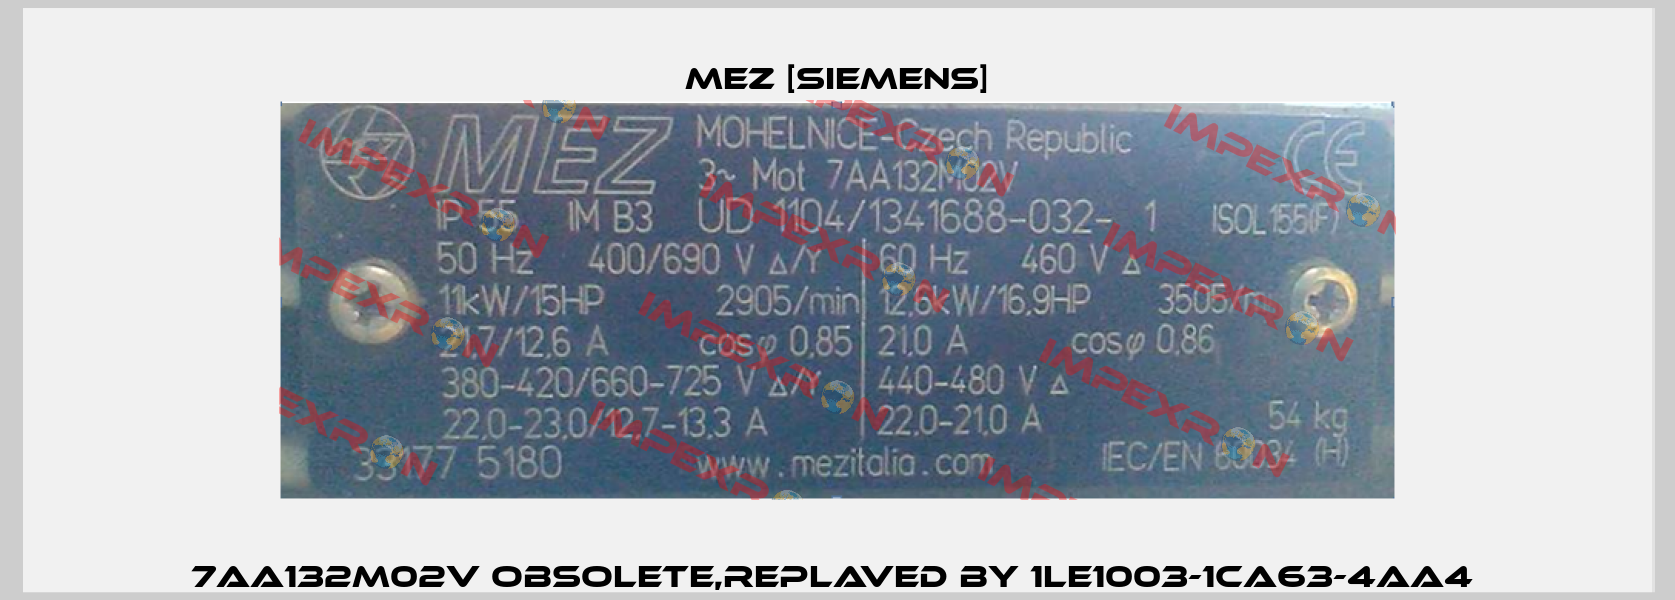 7AA132M02V obsolete,replaved by 1LE1003-1CA63-4AA4  MEZ [Siemens]